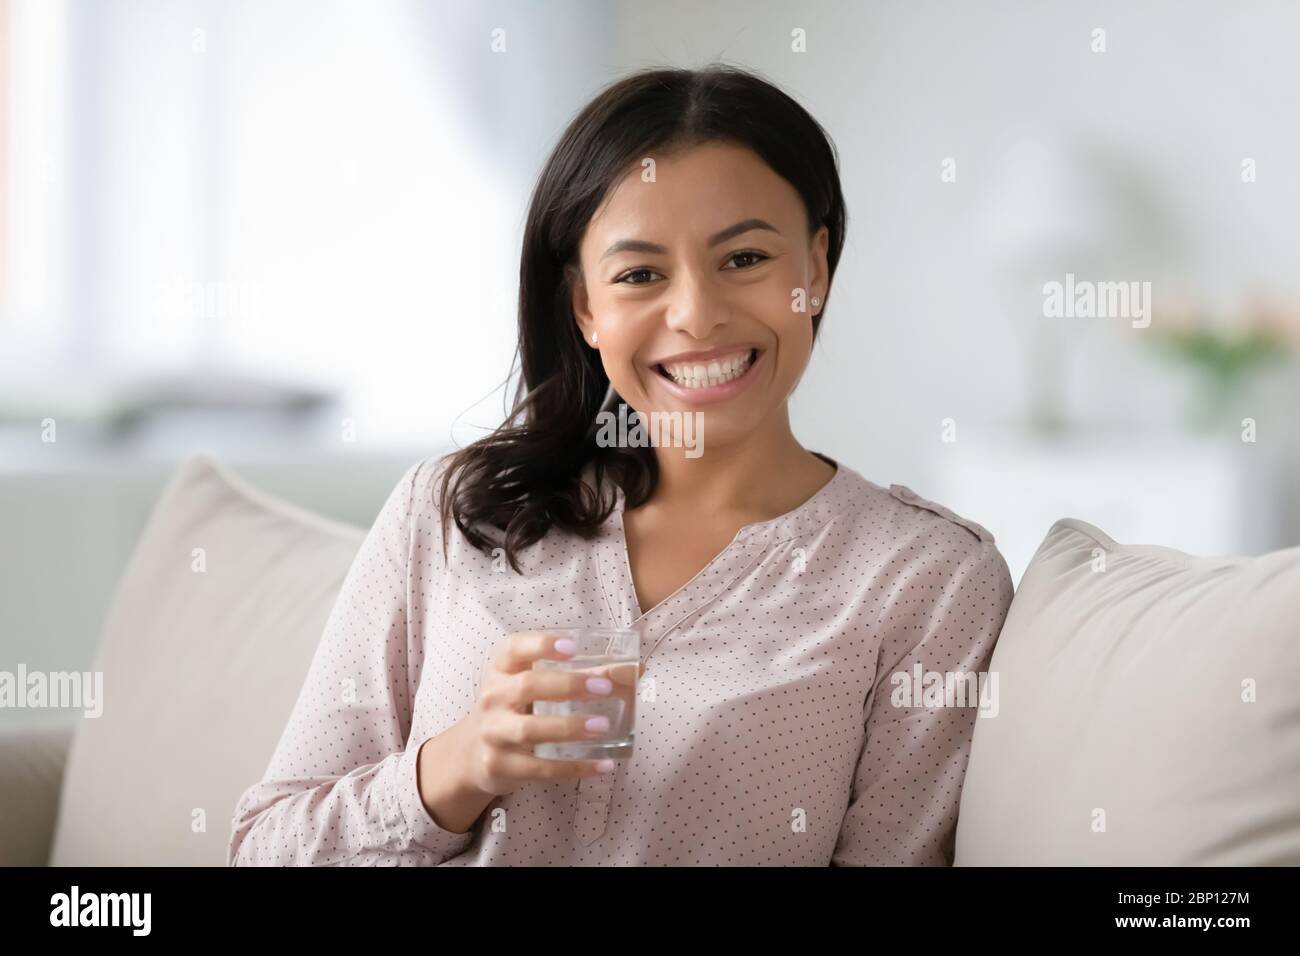 Frau auf dem Sofa sitzend, Glas Wasser haltend fühlt sich gesund an Stockfoto